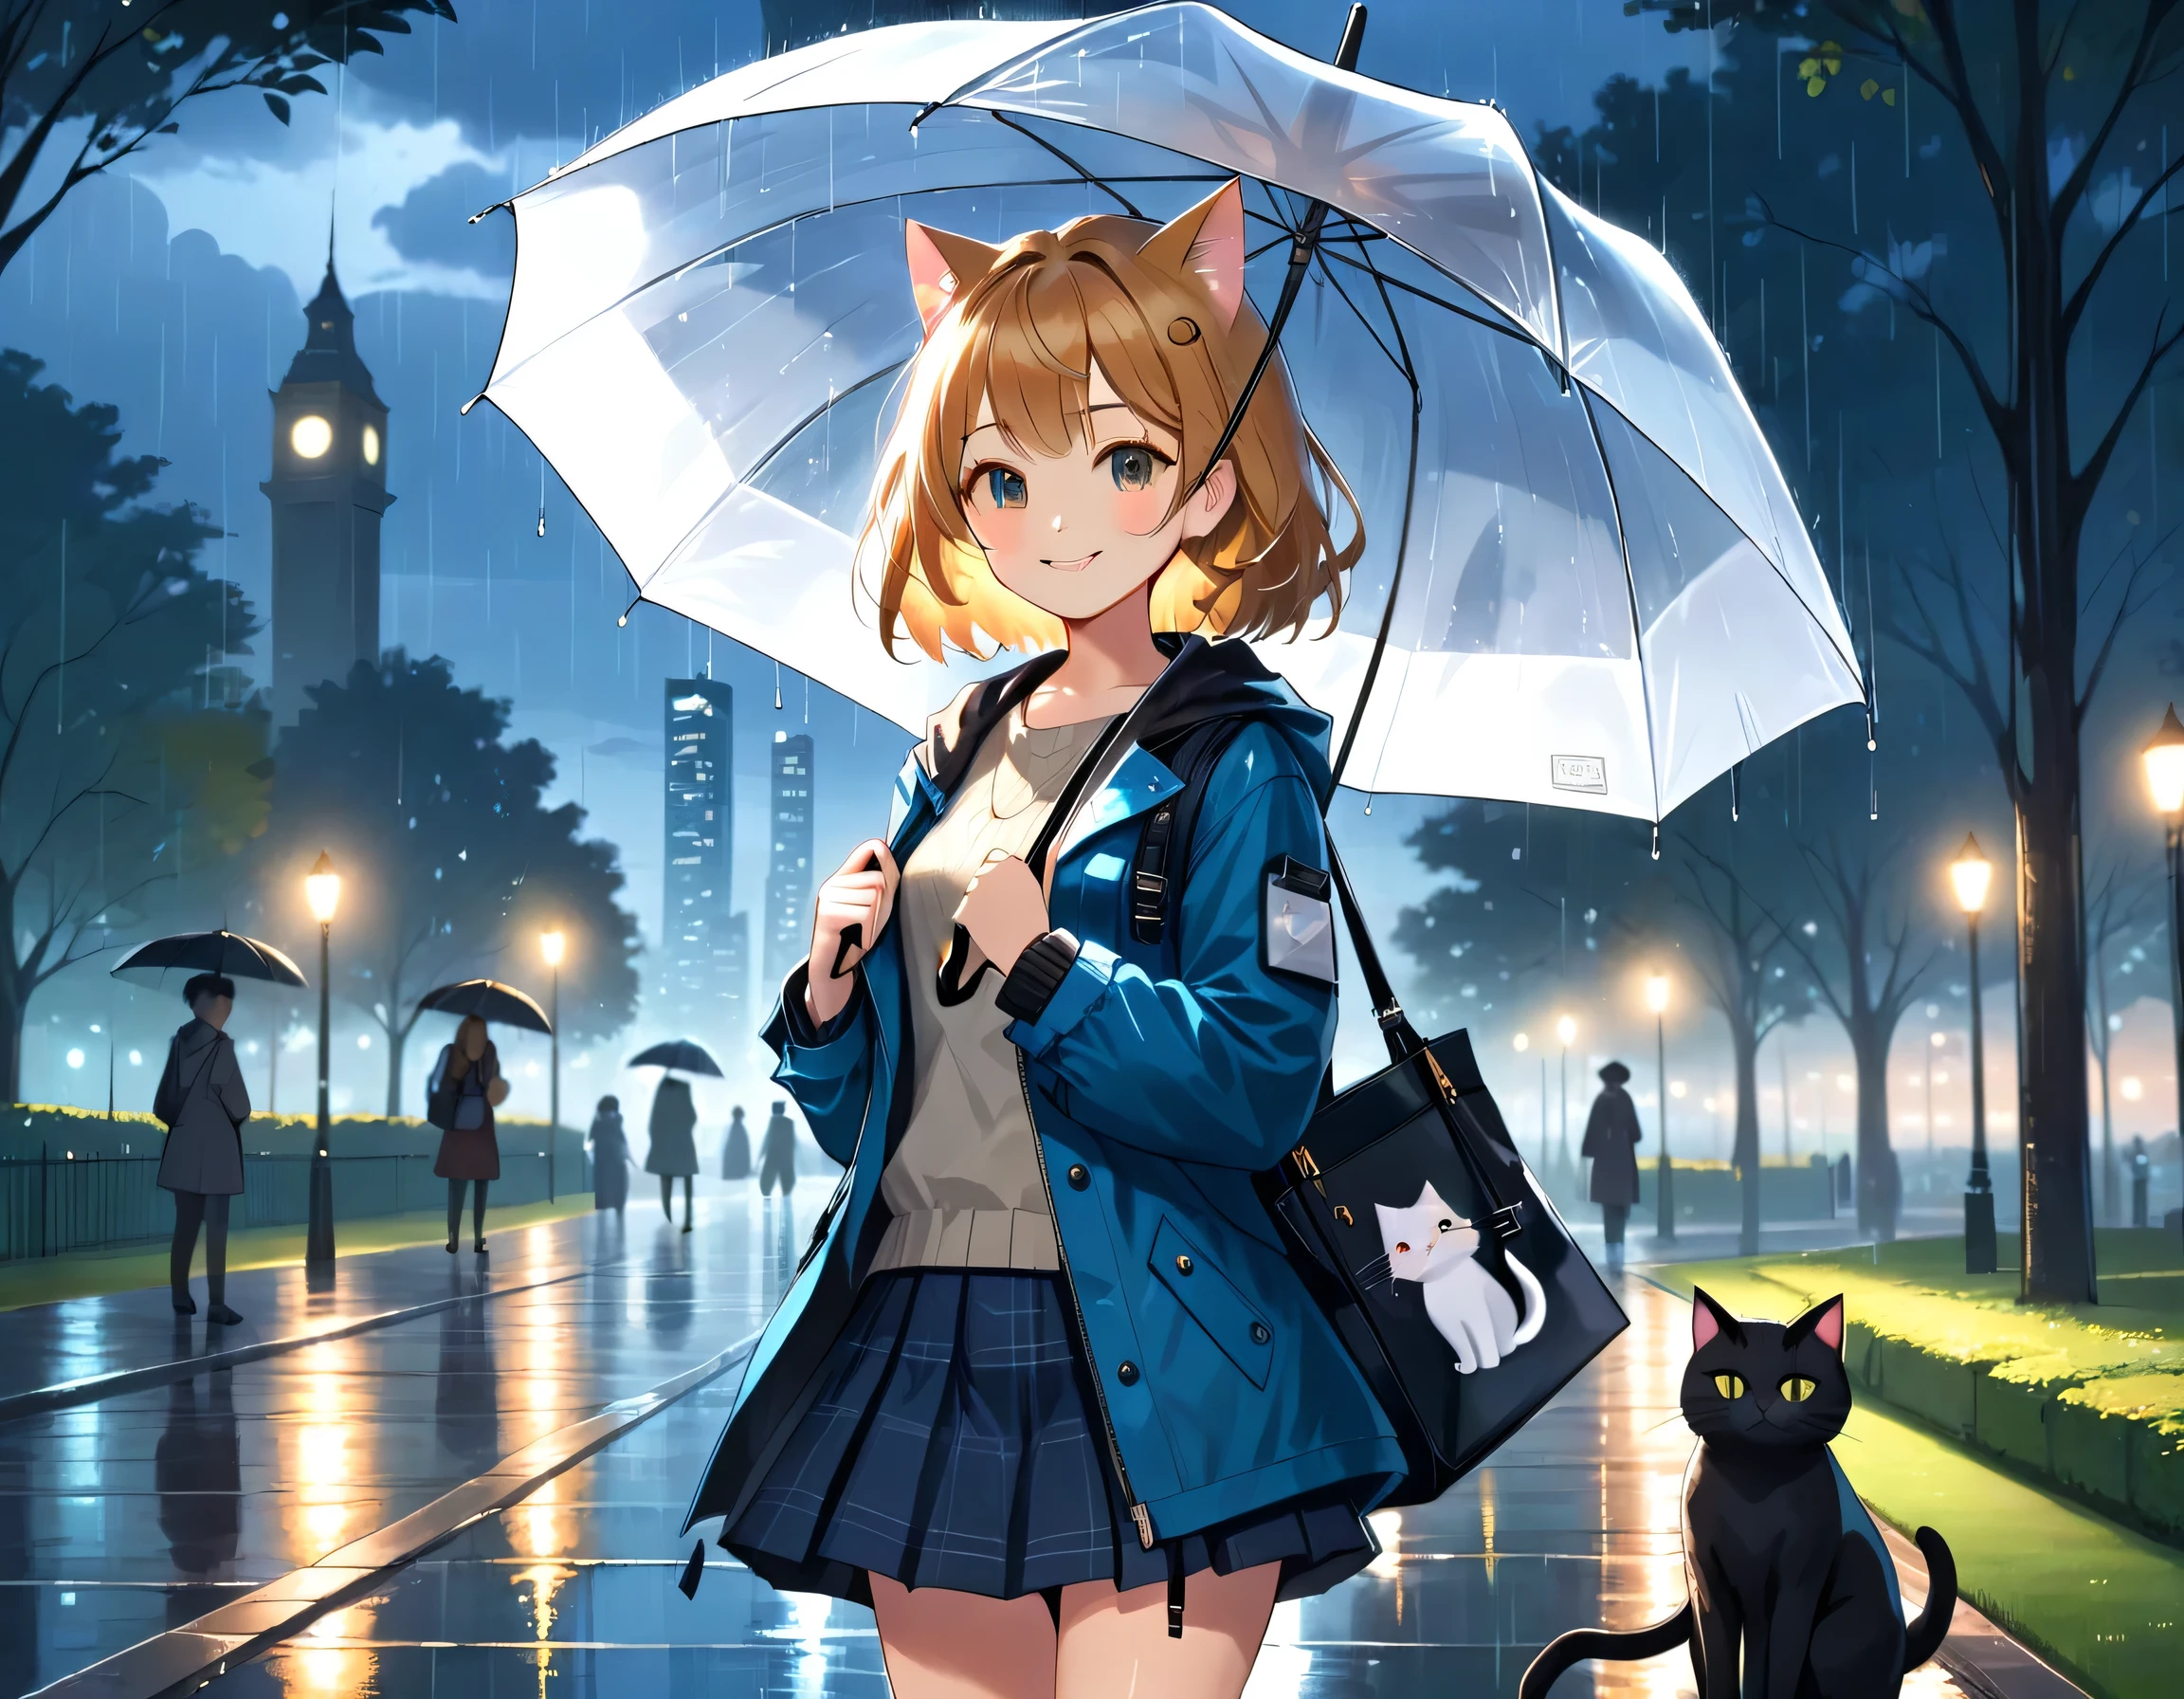 (傑作, 最高品質, 8k), 
公園にいる女の子と猫のイラスト, 雨が降っていて彼女は傘を持っています, 薄暗い夜, 拡散した街の光が輝く, ジャケット, ミニスカート, ショルダーバッグ, 猫に傘を差しかける, 笑顔, 詳細な絵が描かれた猫.